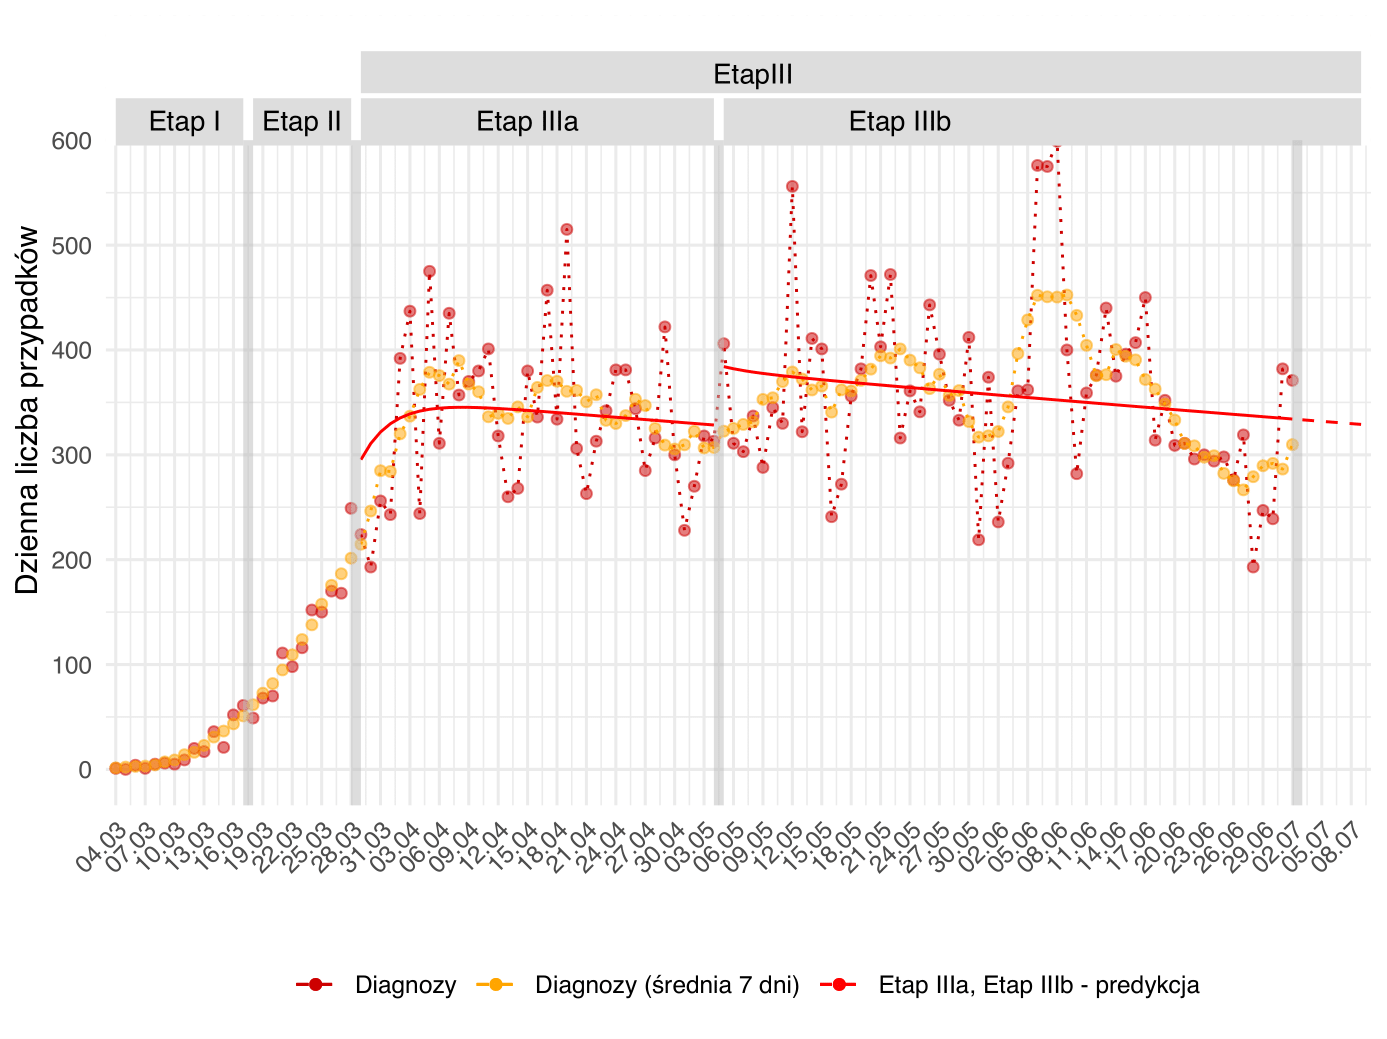 Prognozowana dzienna liczba przypadków na kolejnych etapach epidemii. Czerwone punkty odpowiadają dziennej liczbie diagnozowanych przypadków. Punkty pomarańczowe są średnią na dany dzień w tygodniowym oknie czasowym. Czerwona ciągła linia obrazuje przebieg predykcji dla poszczególnych etapów epidemii w Polsce, ograniczonymi przez pionowe szare pasy odpowiadające wprowadzeniu lub zdjęciu restrykcji.